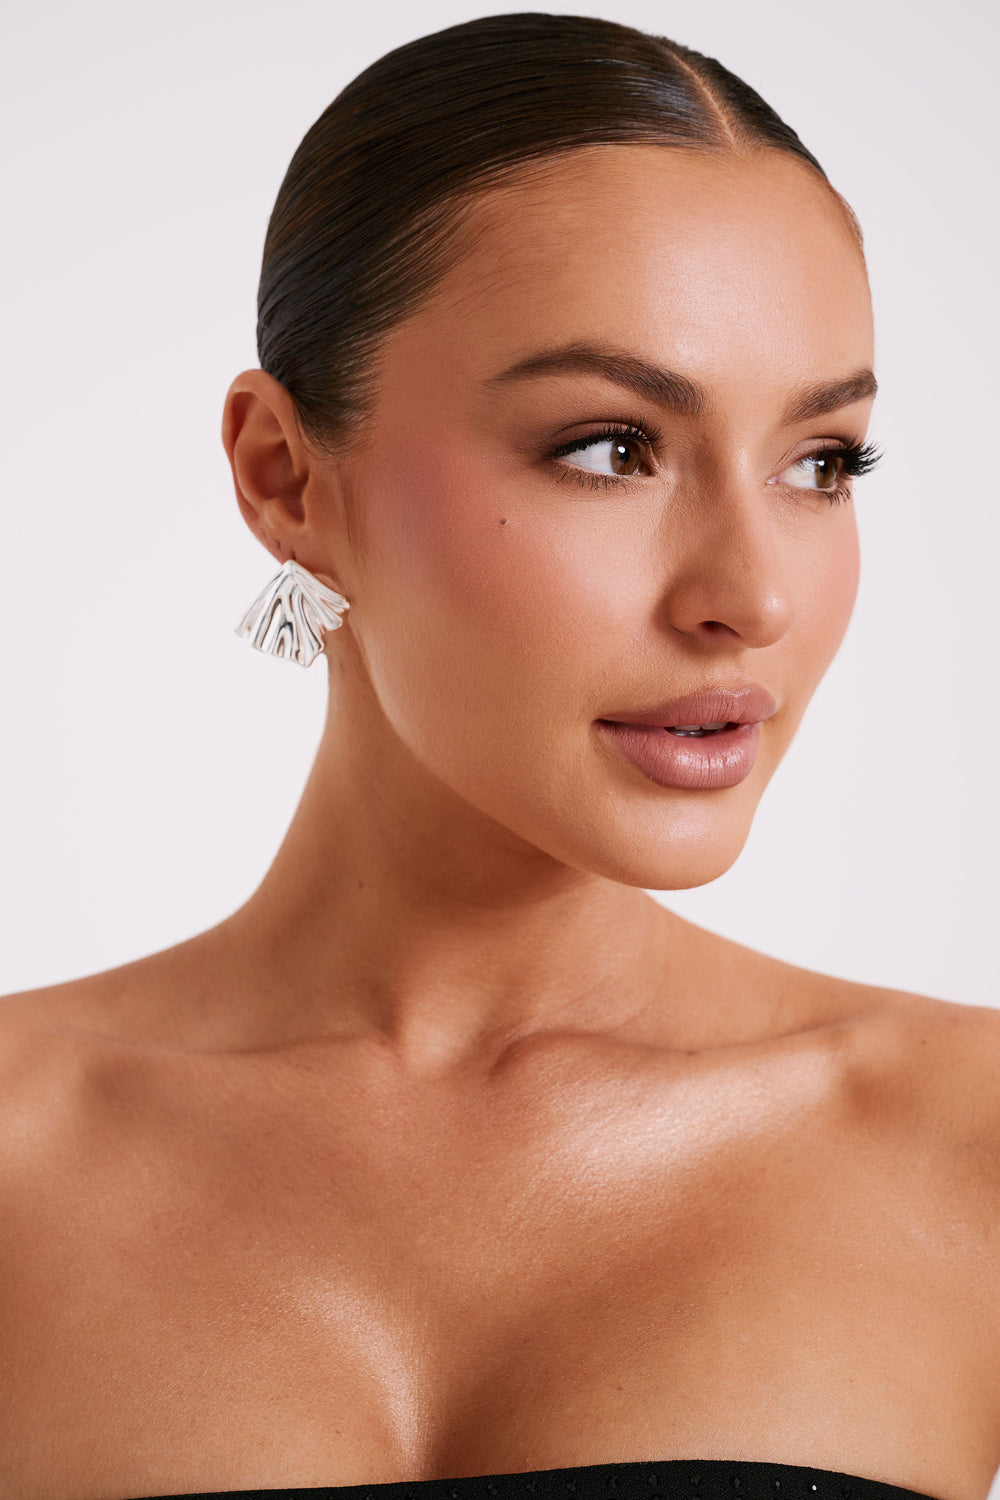 Willa Draped Earrings - Silver